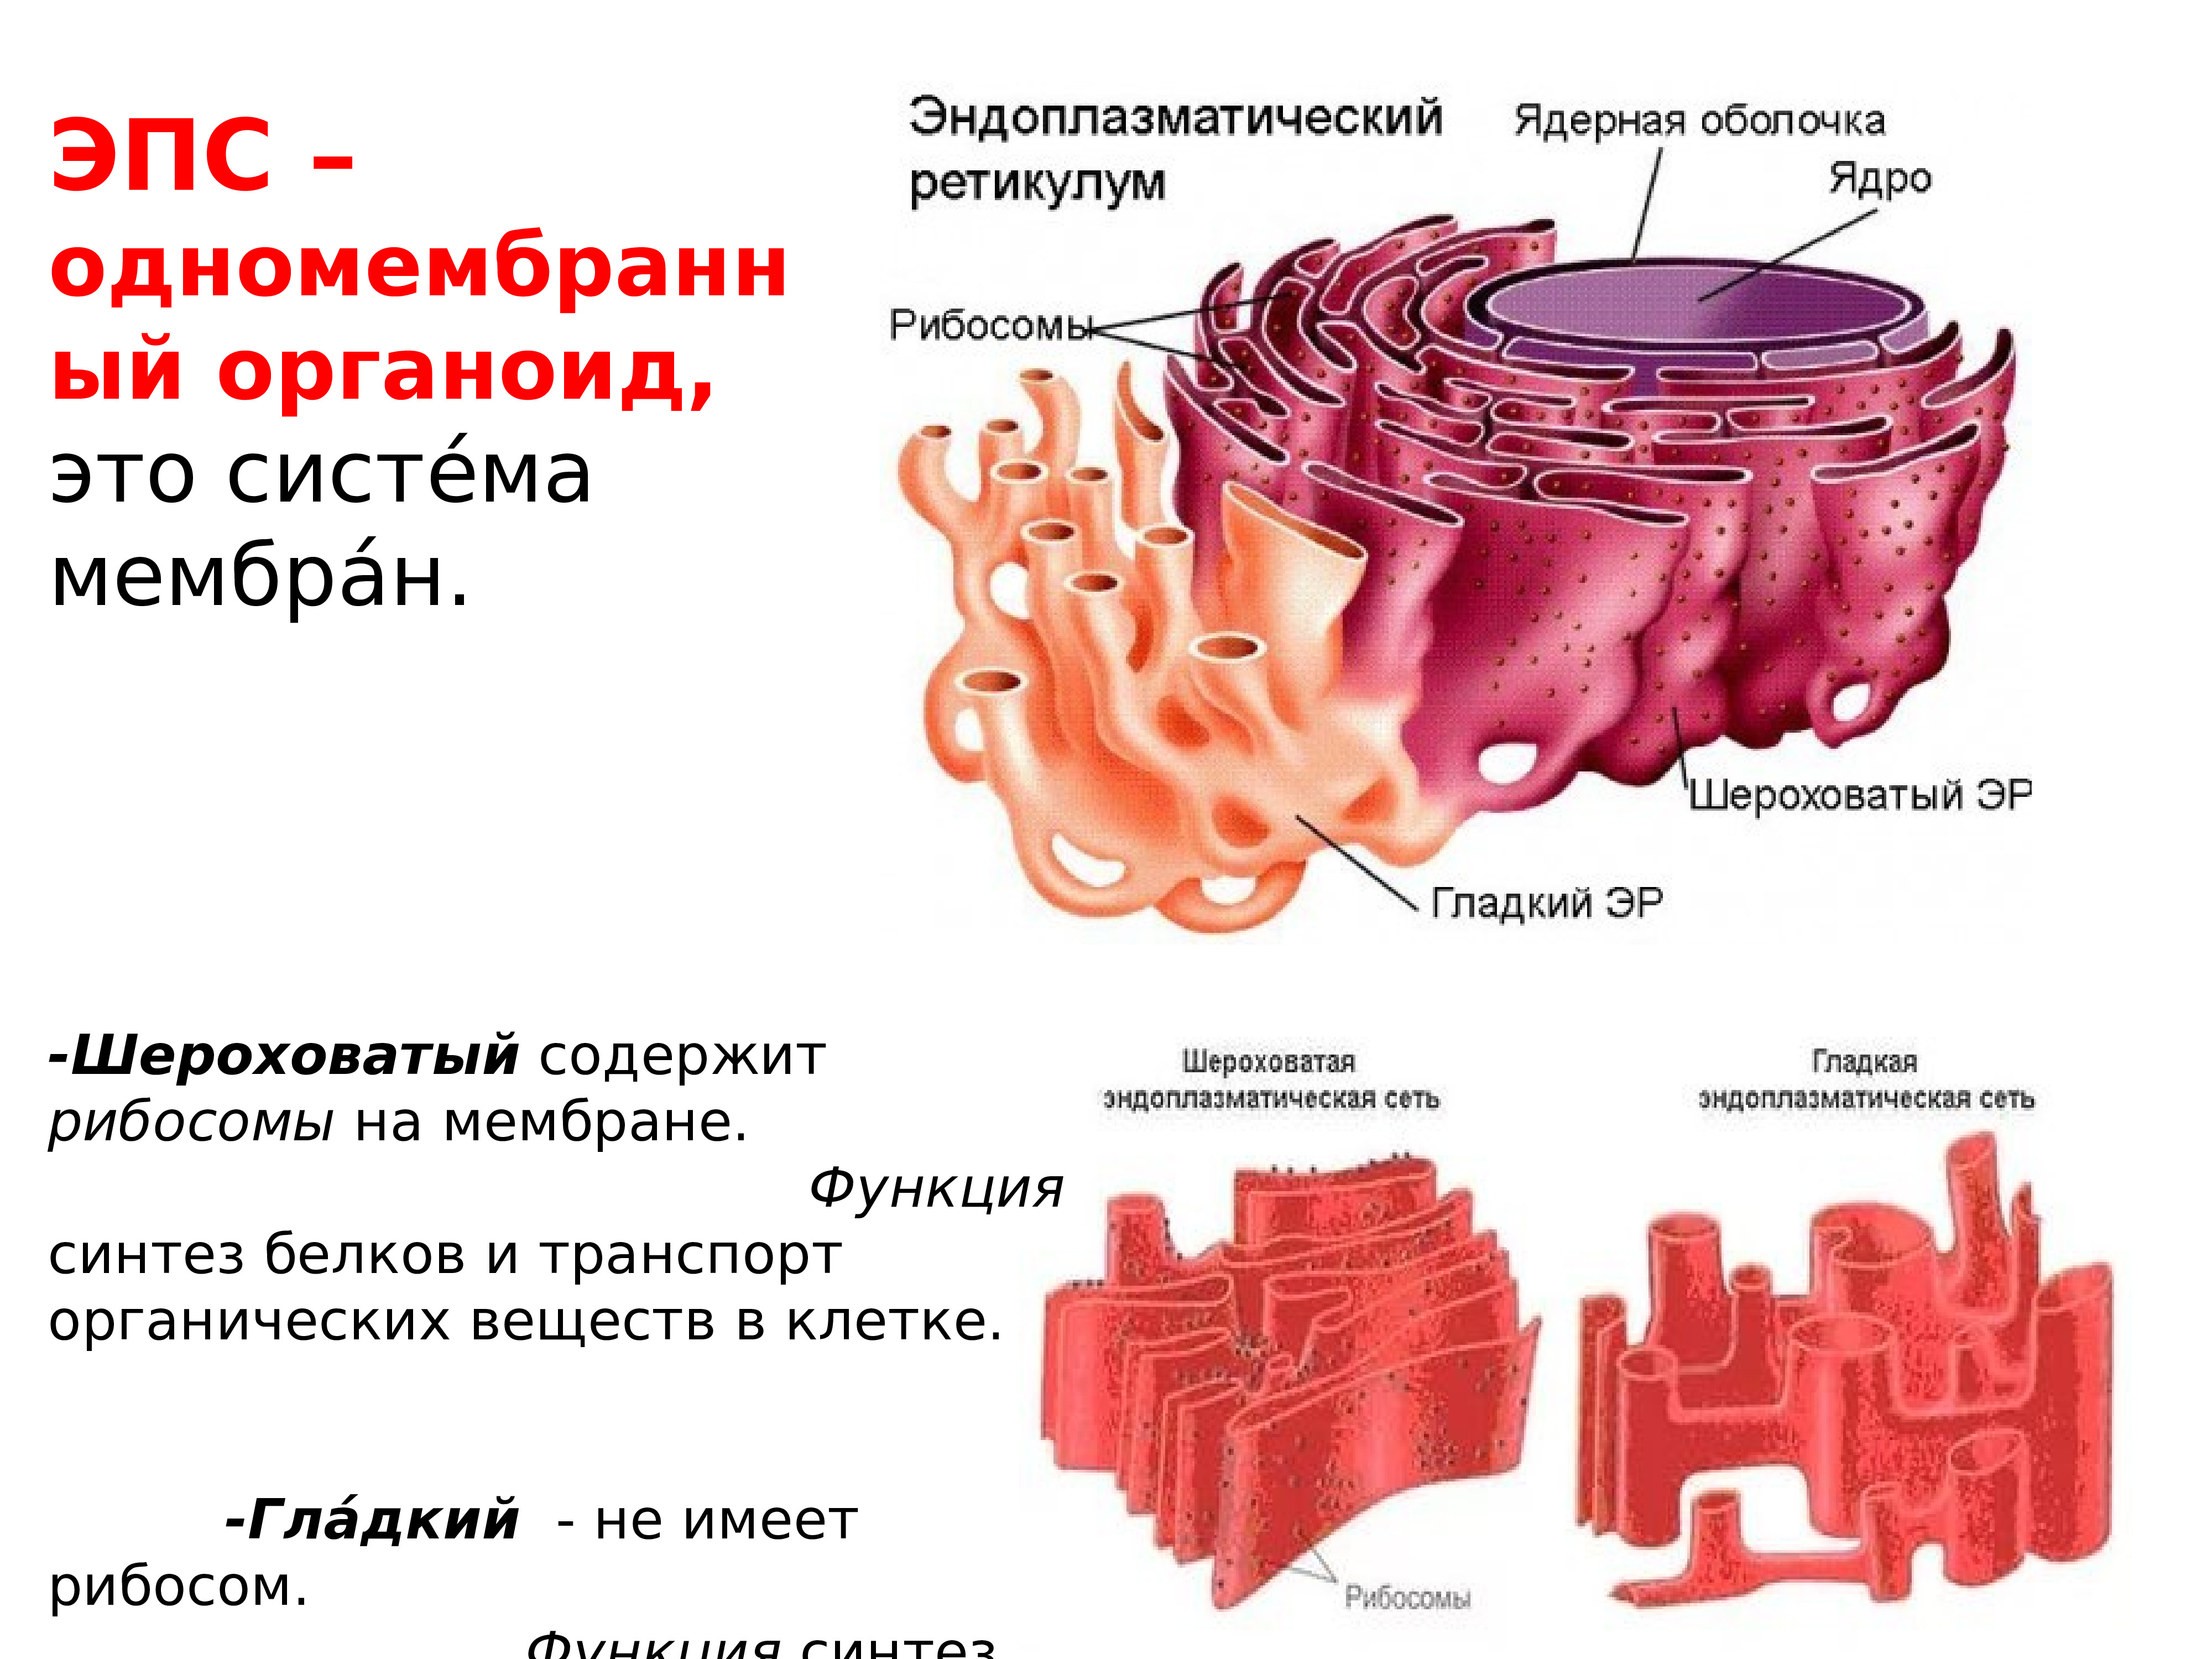 Шероховатая эпс синтез белков. Эндоплазматическая мембрана одномембранный. Эндоплазматическая сеть функции органоида. Структура шероховатая эндоплазматическая сеть.